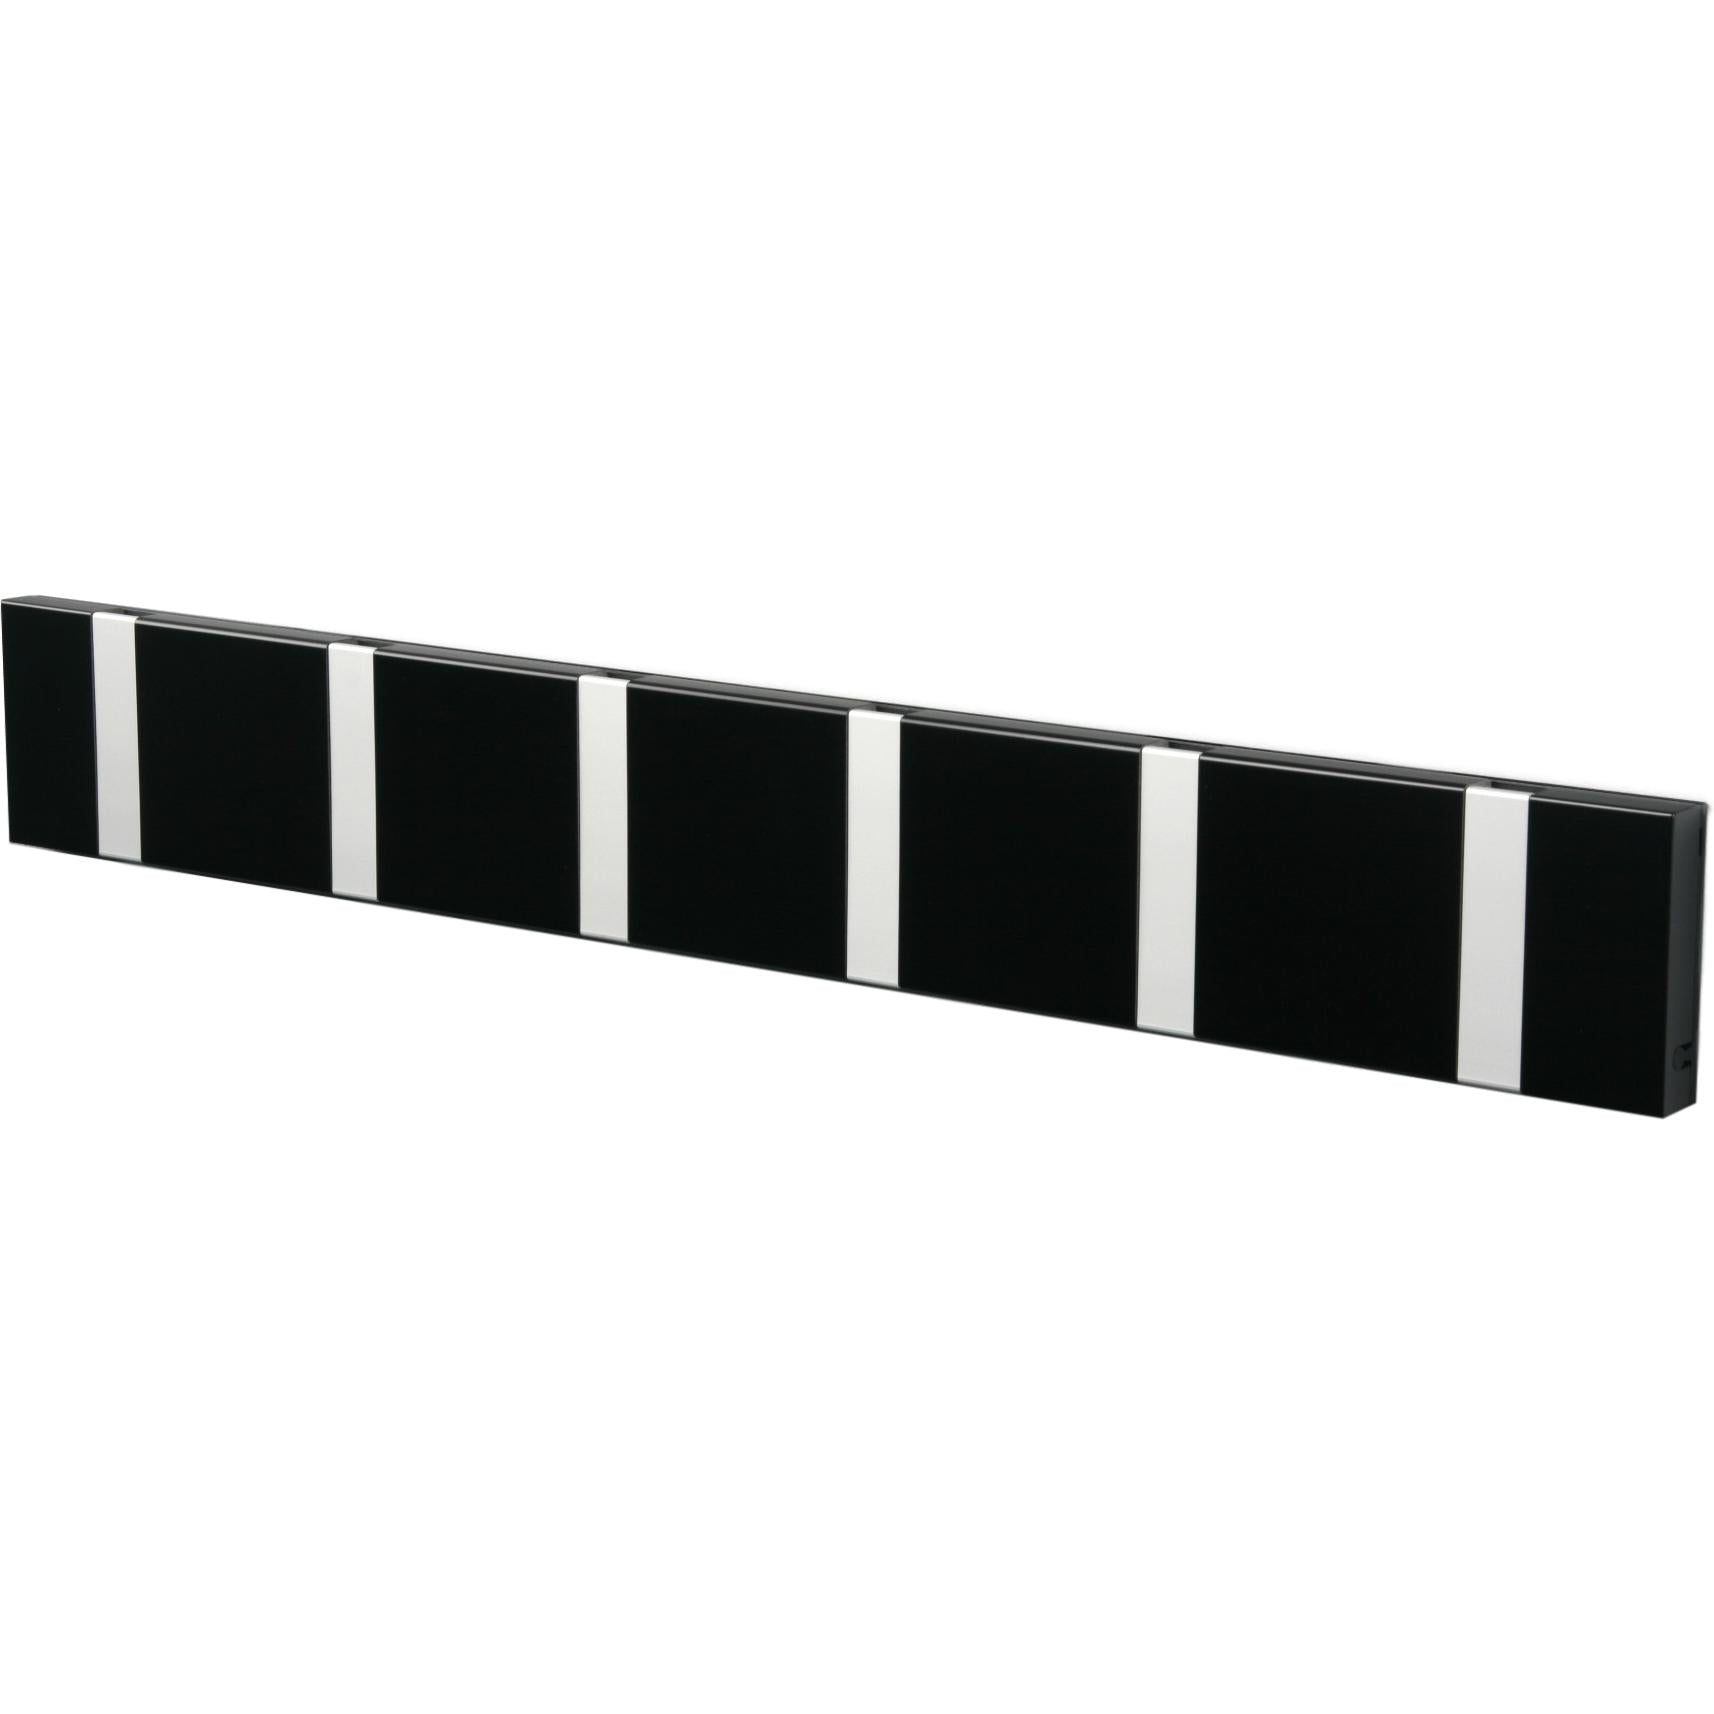 Loca Knax horizontale kapsel 6 haken, zwart/grijs